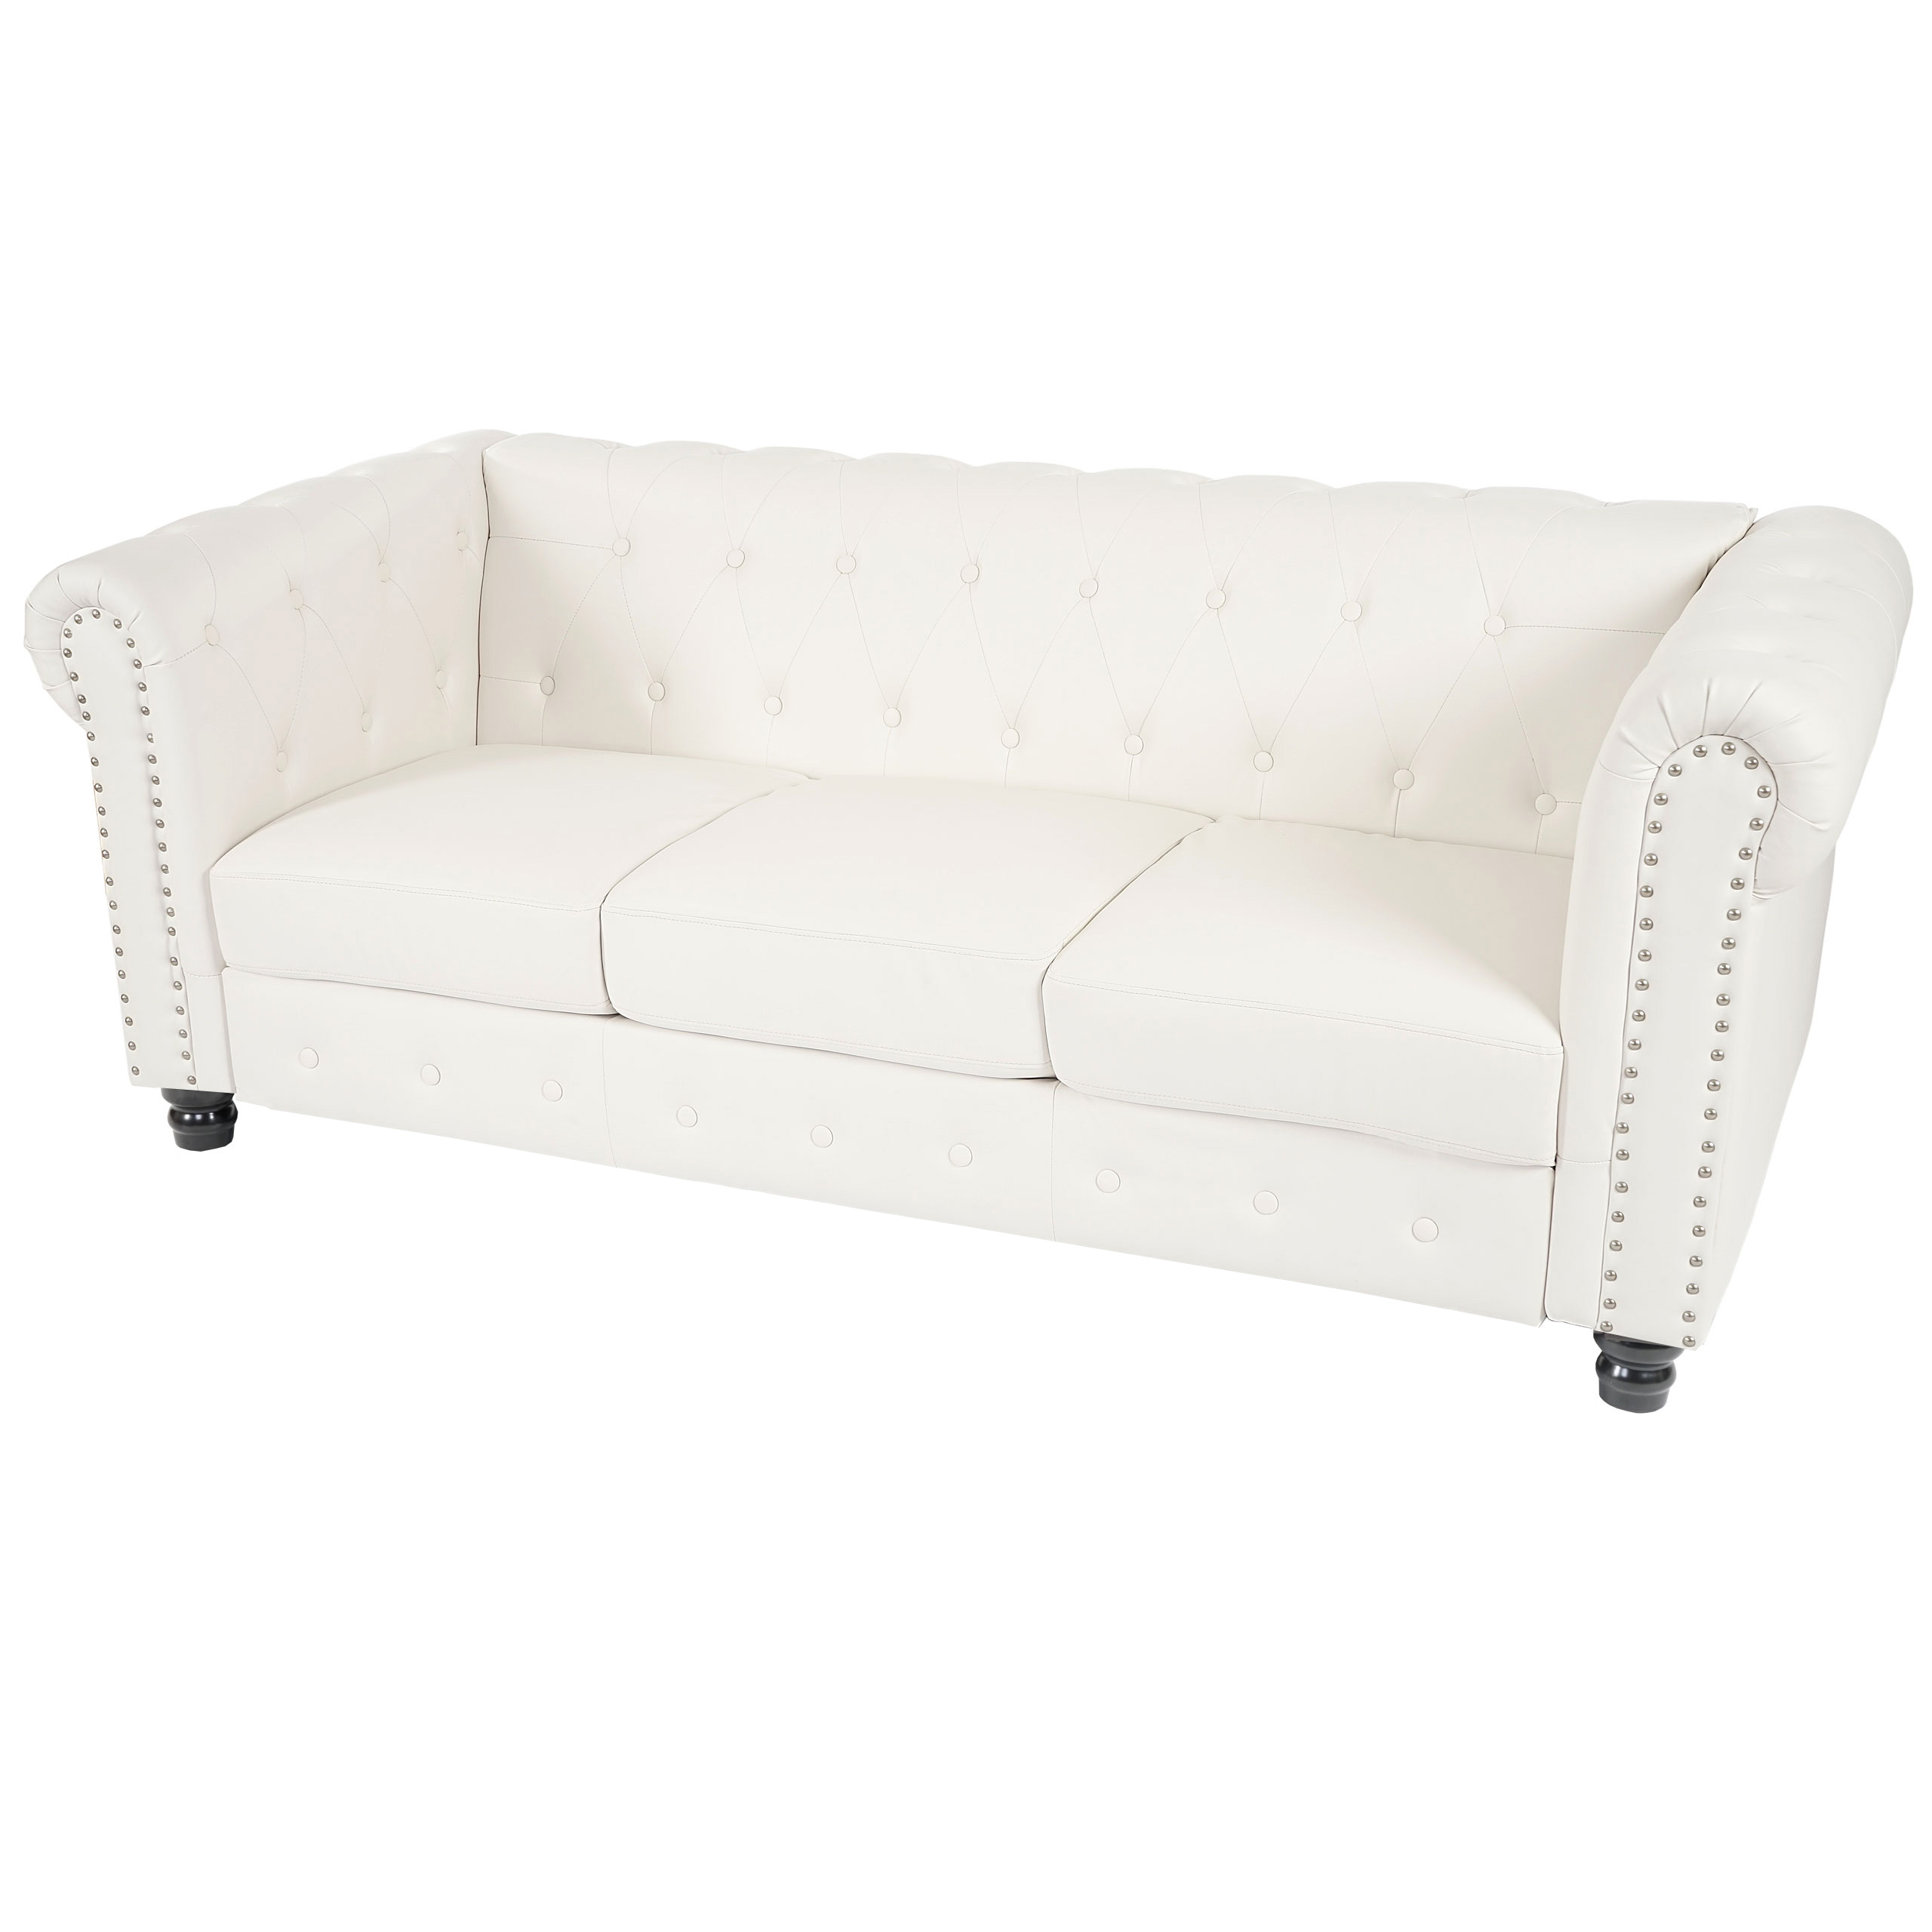 Luxus 3er Sofa Loungesofa Couch Chesterfield Kunstleder - eckige Füsse,  schwarz